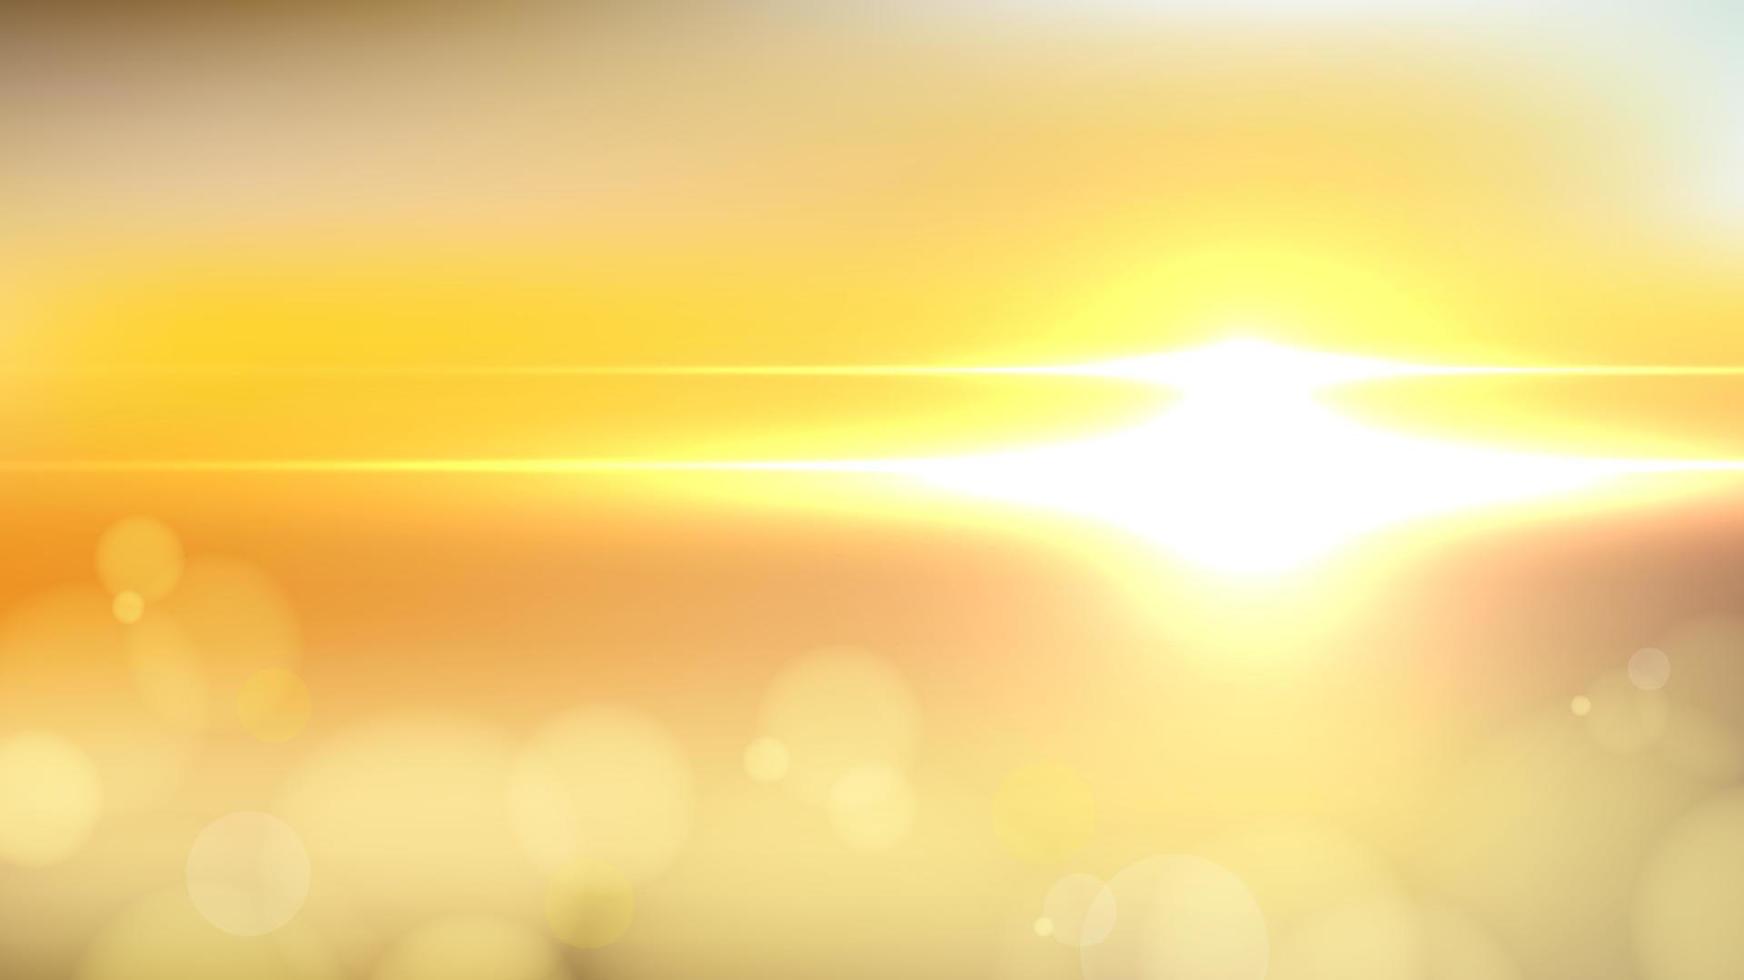 sonnenaufgangszeit sonnenlicht mit bokeh auf gelbem unscharfem naturhintergrund vektor